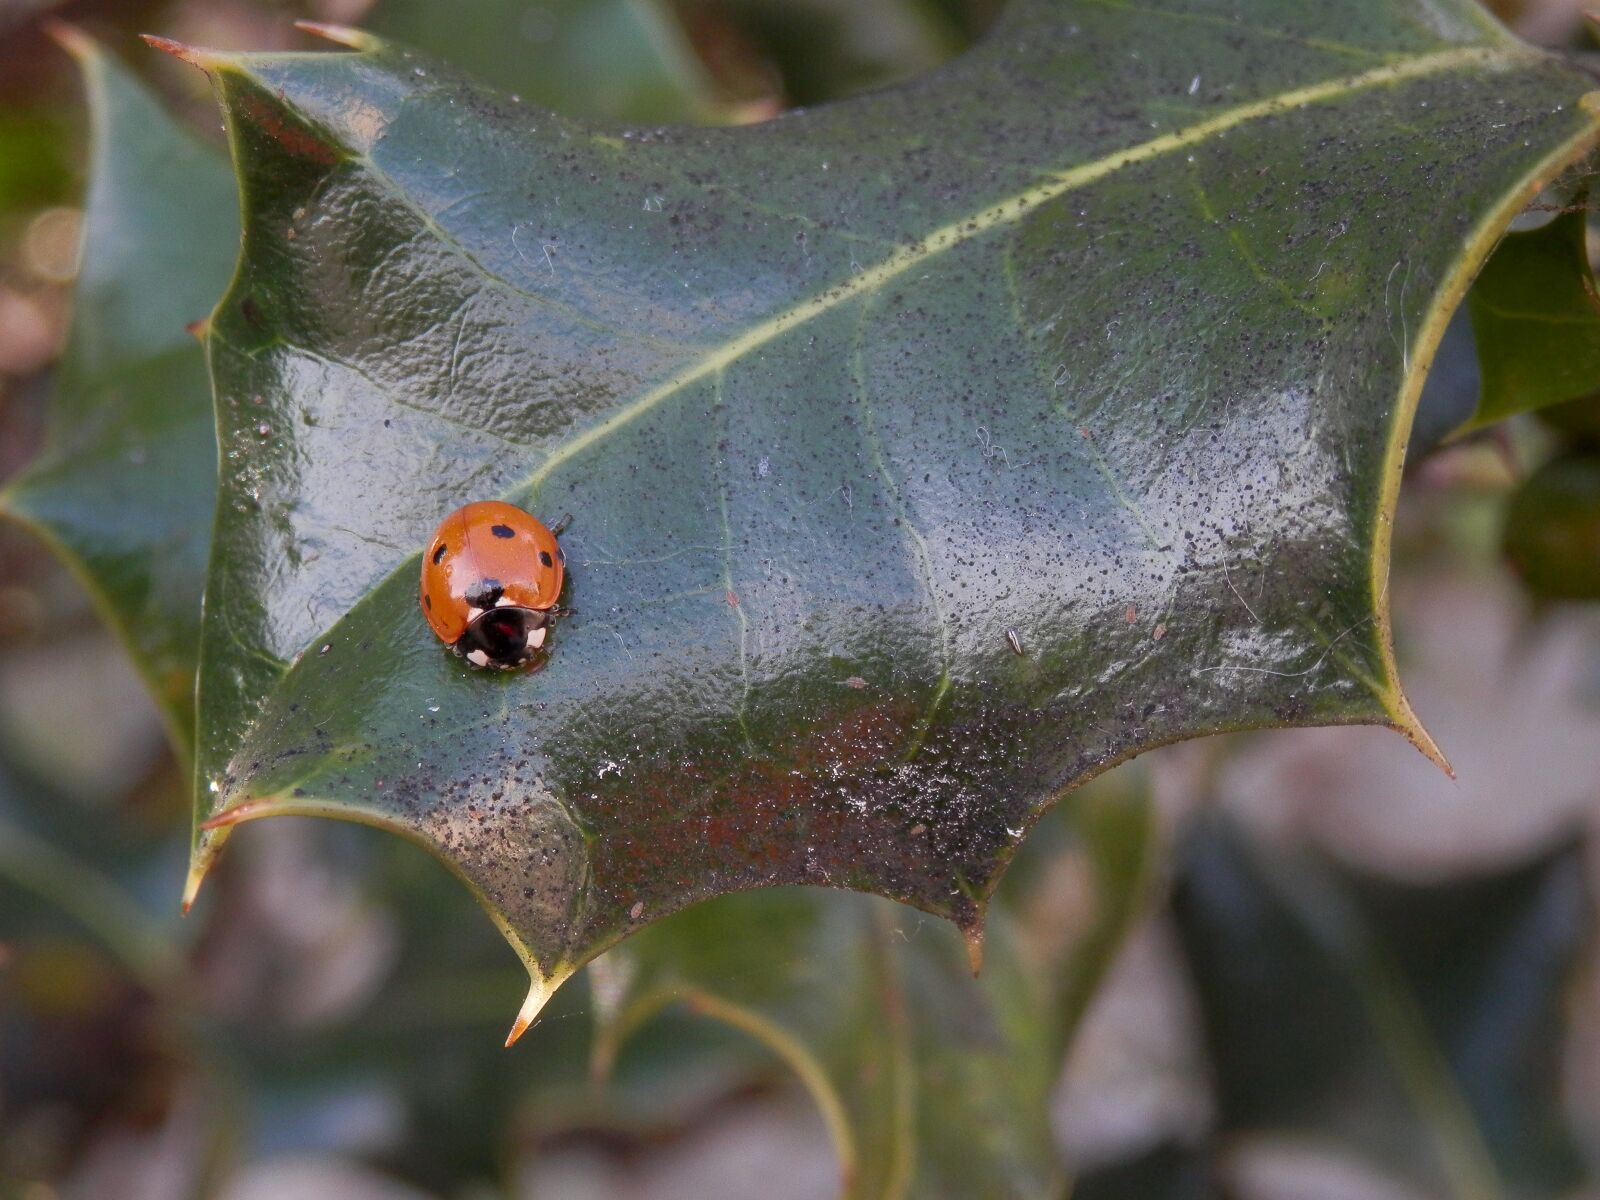 Olympus SZ-14 sample photo. Ladybug, holly, leaf photography